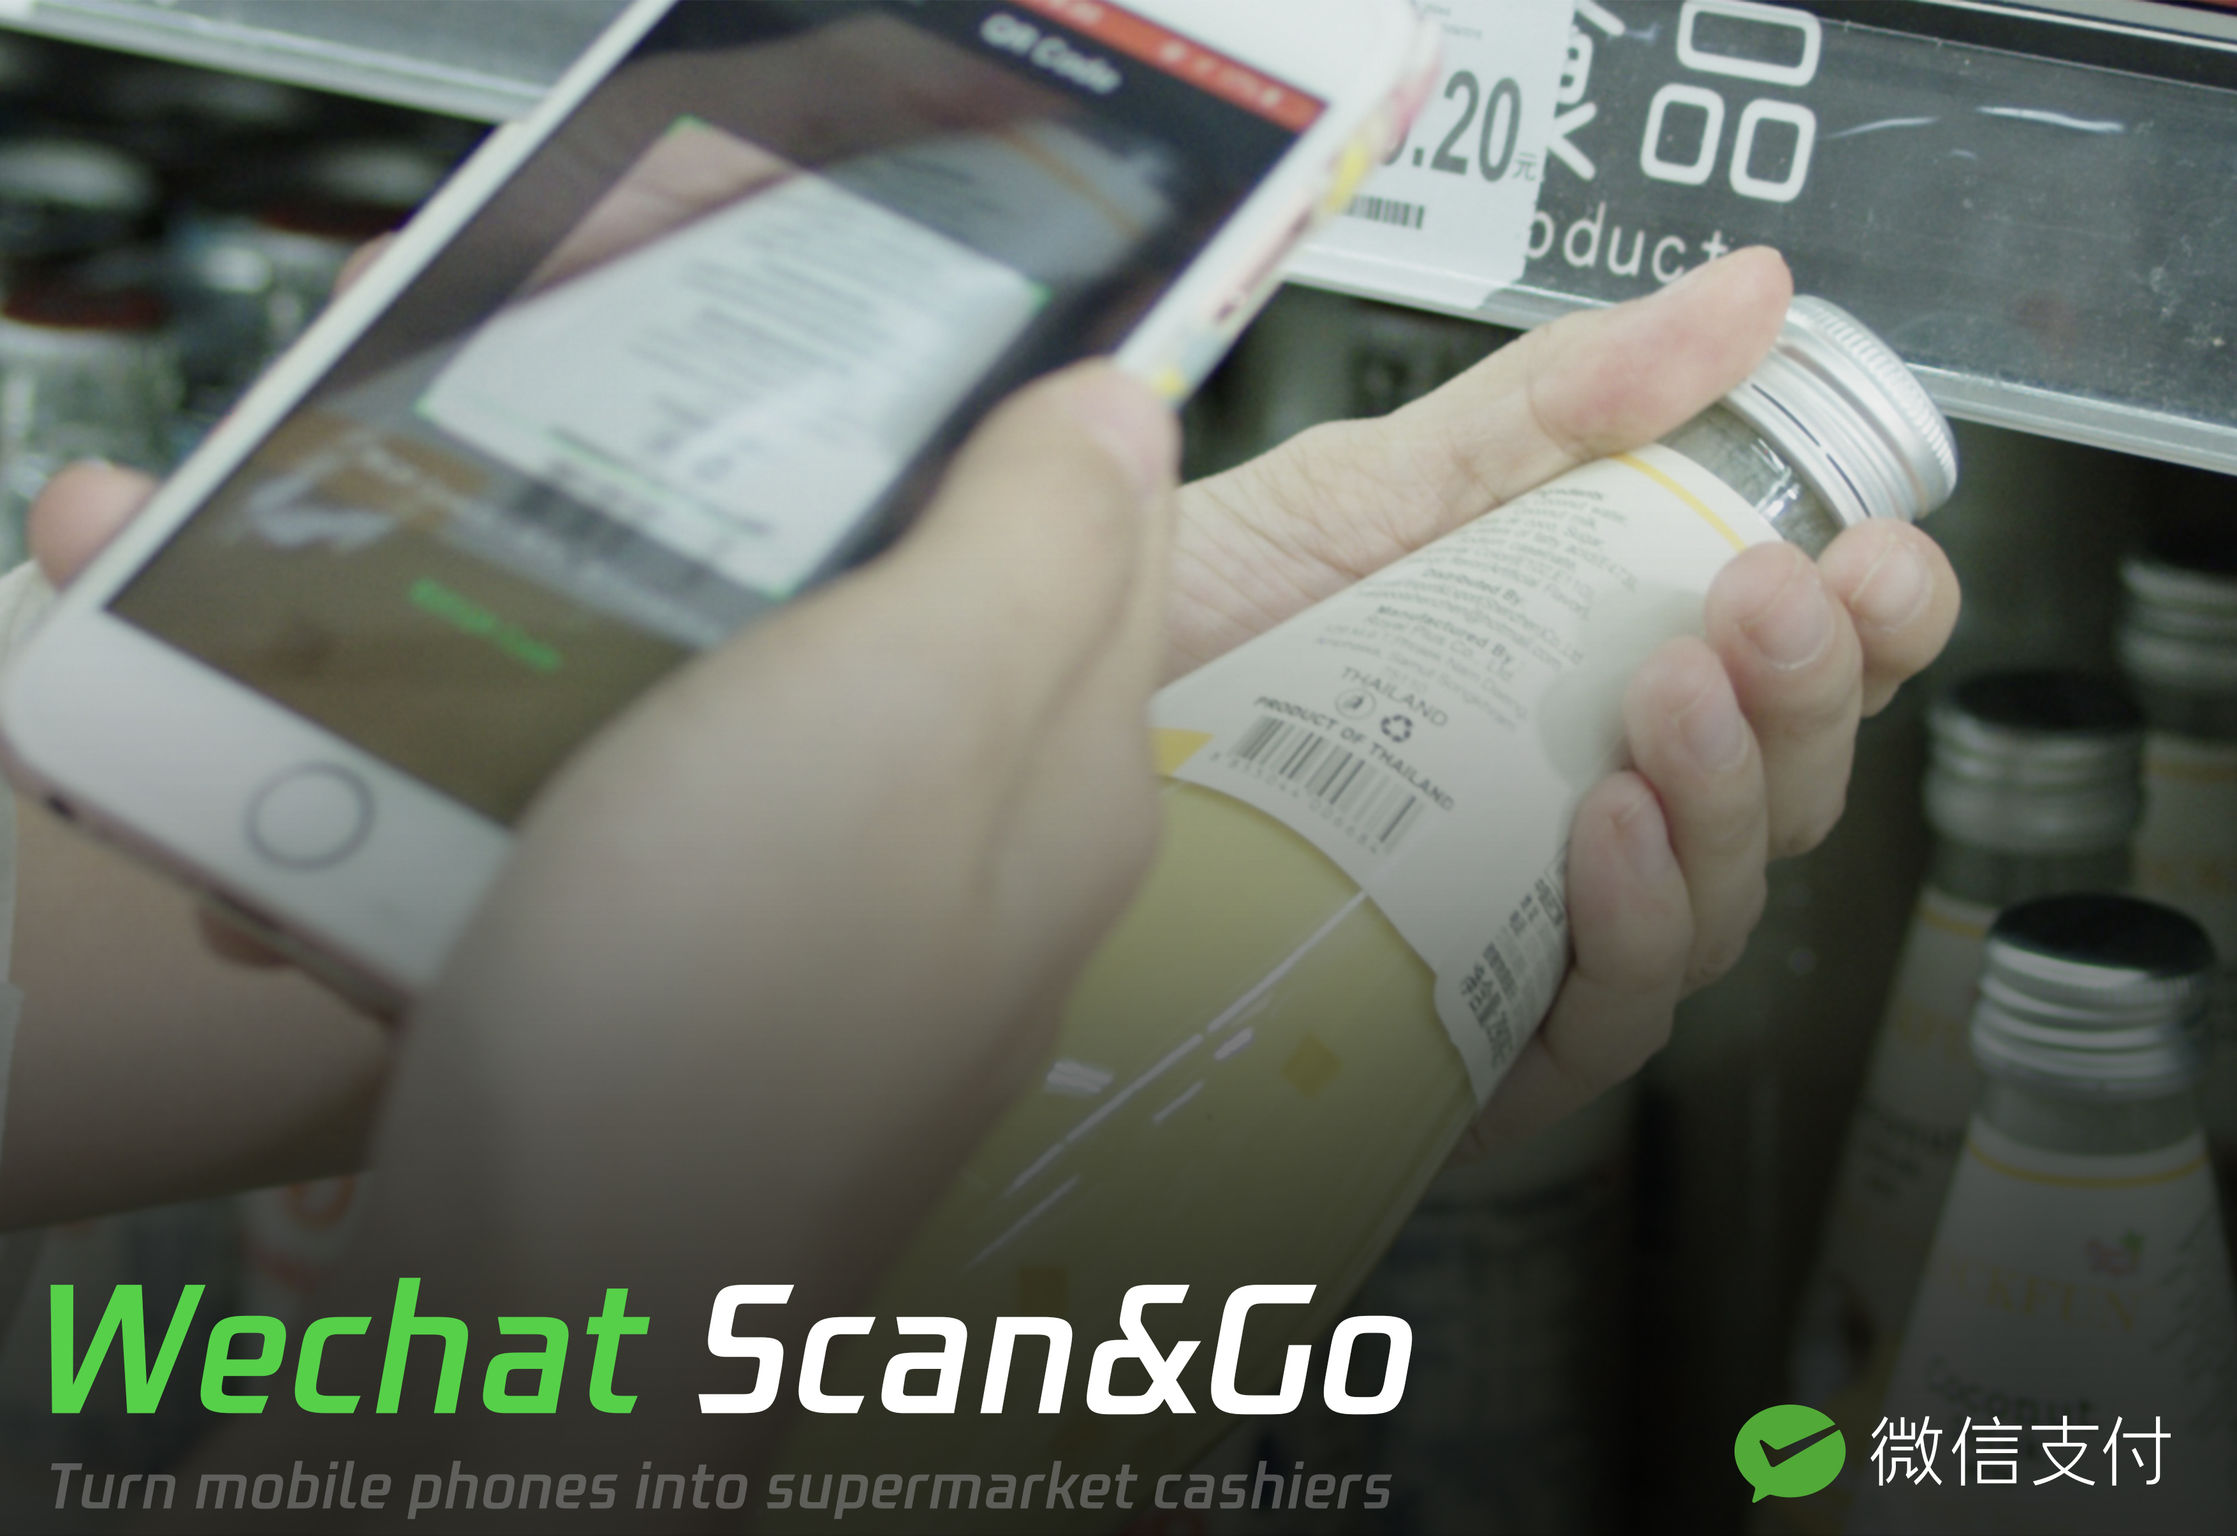 WeChat Scan&Go